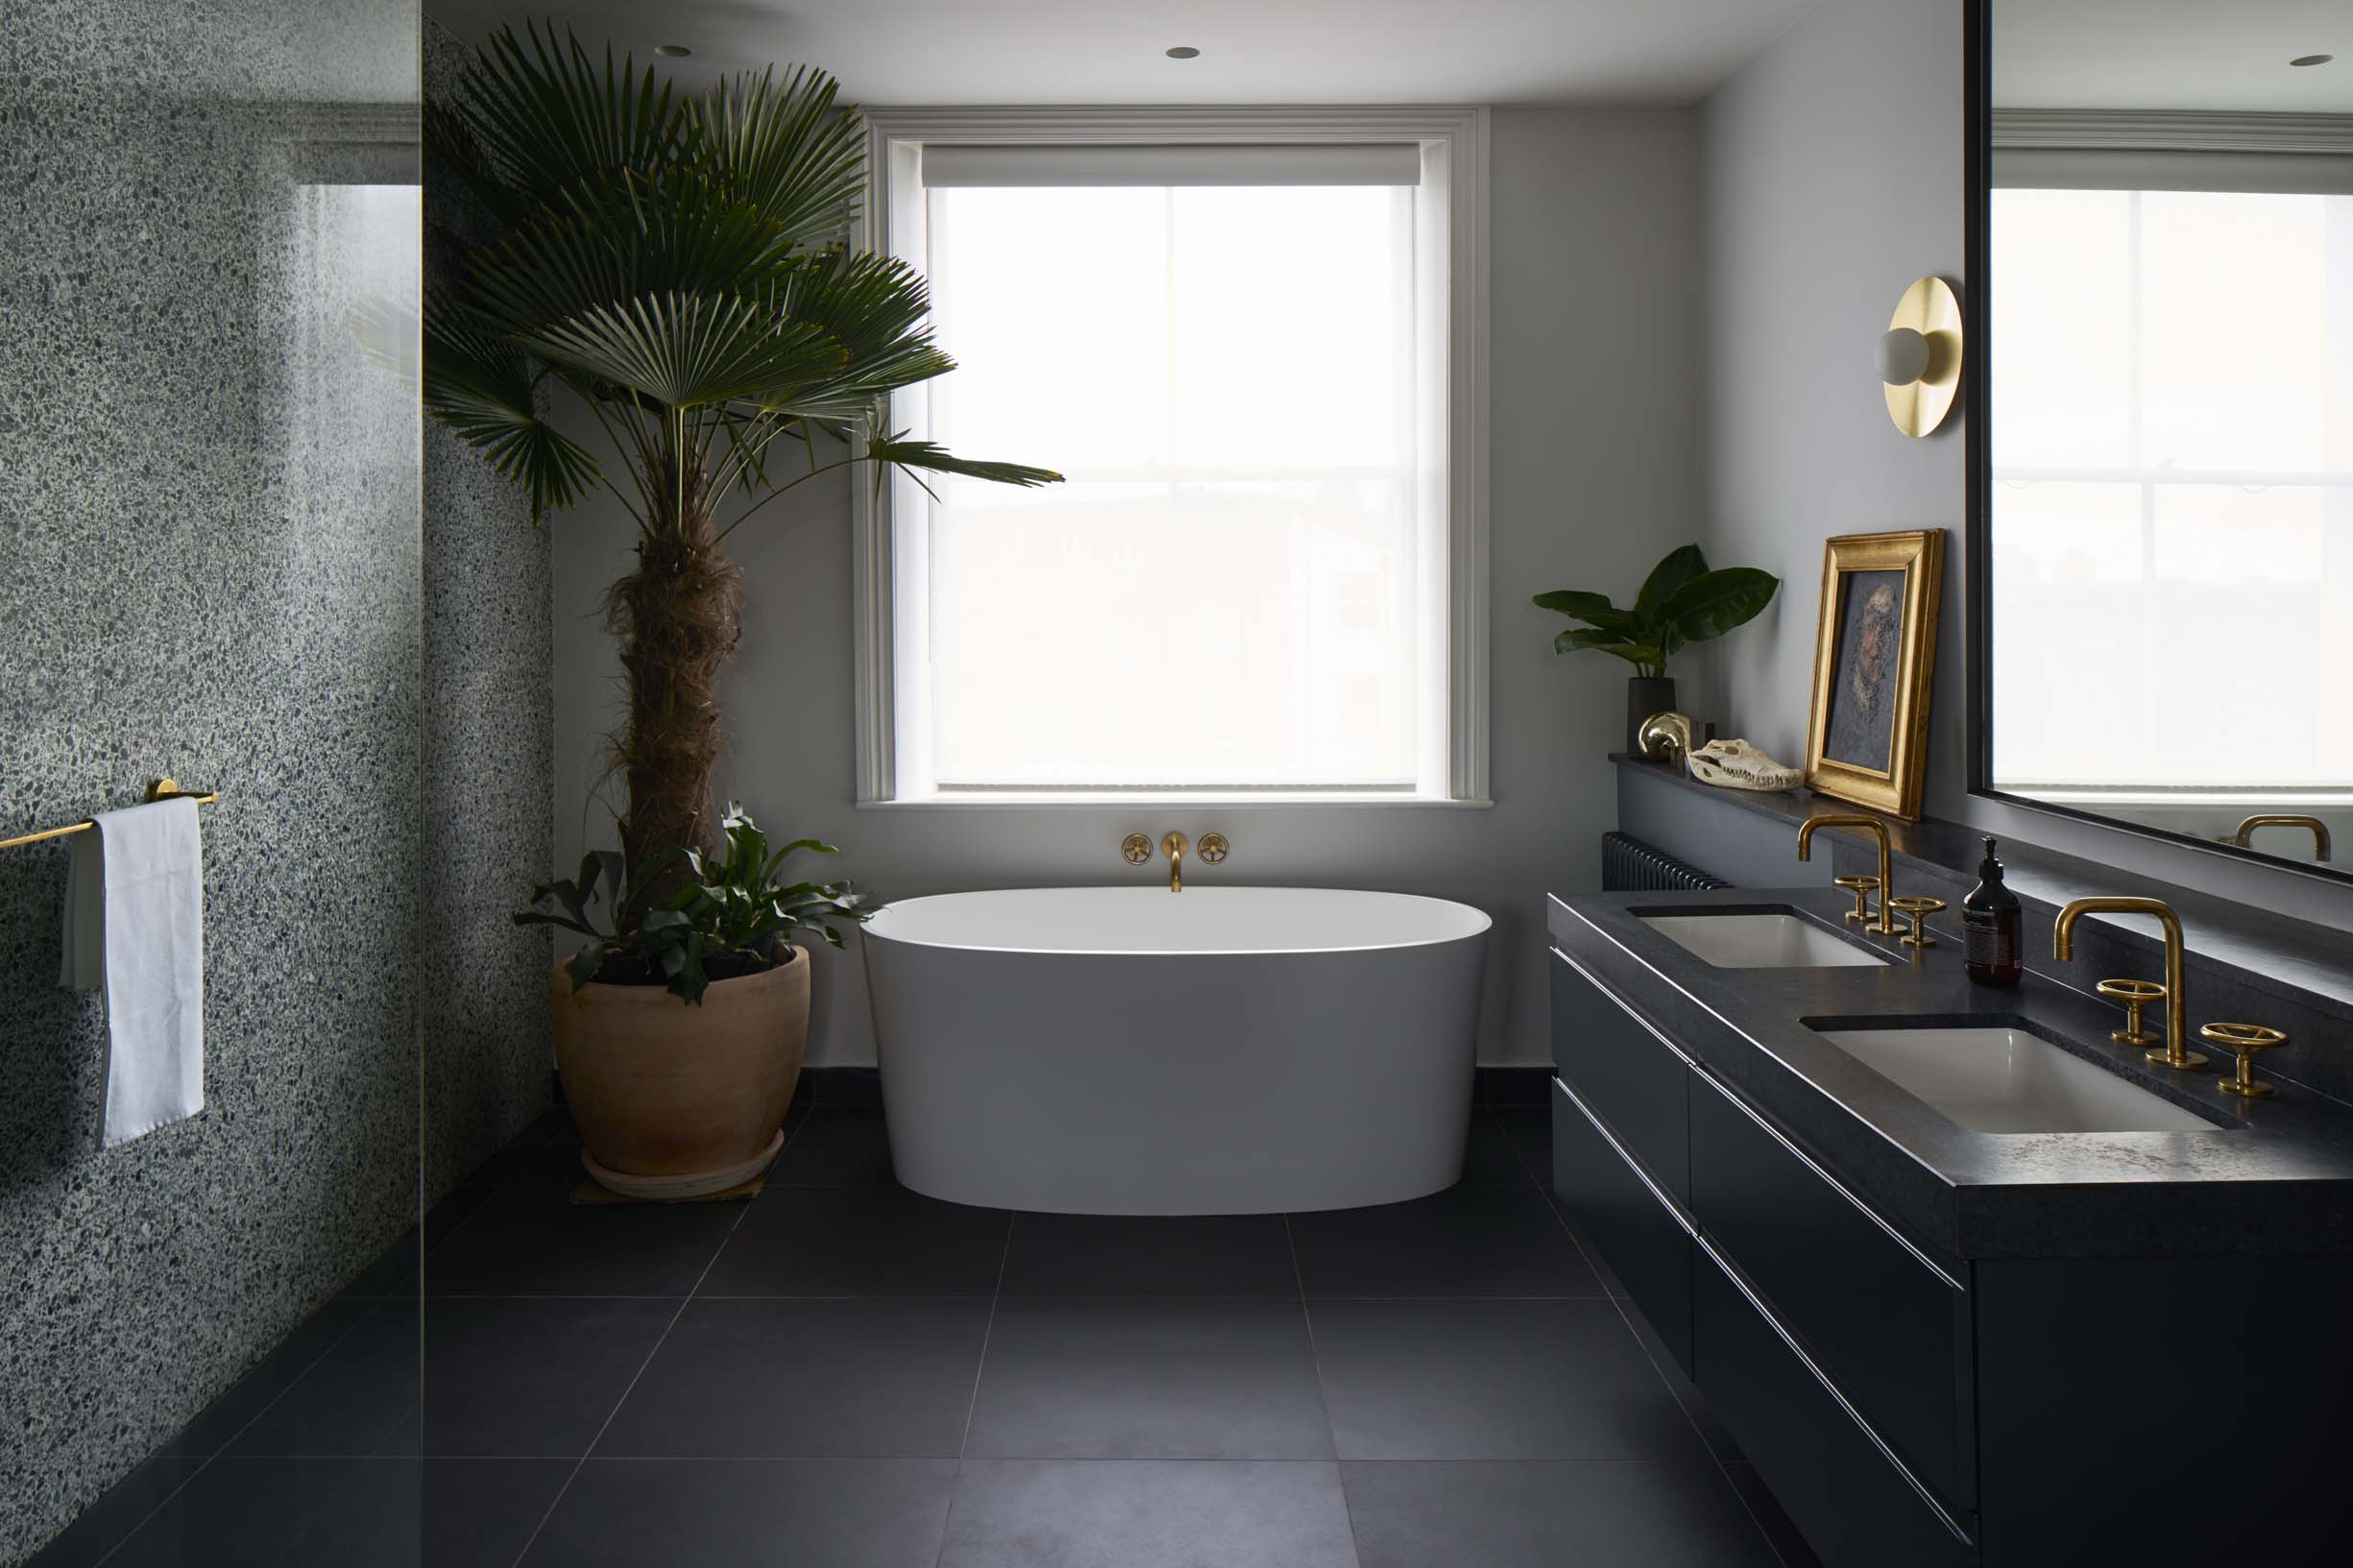 Watermark Designs gold bathroom fixtures